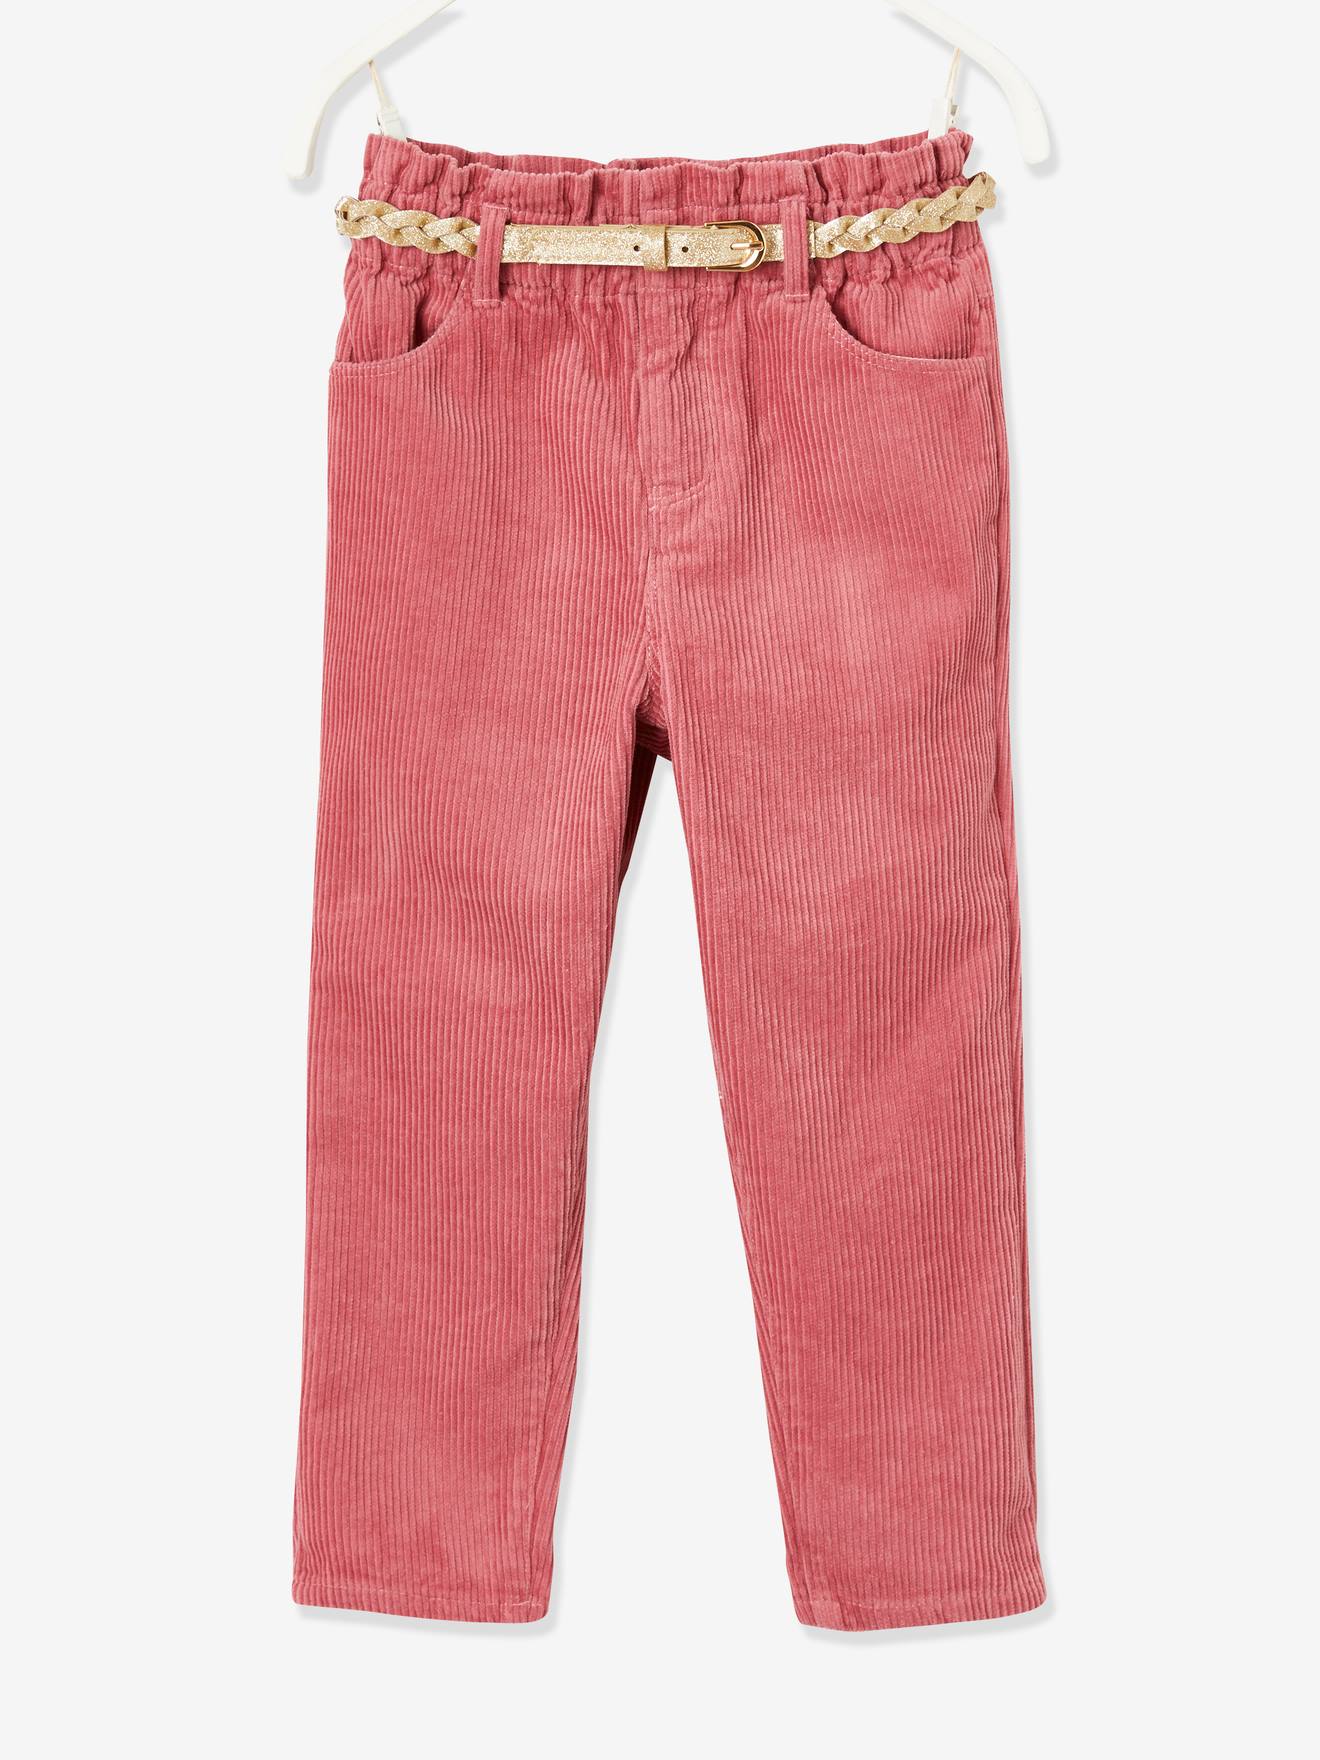 Pantalon paperbag fille en velours côtelé et sa ceinture tressée irisée rose foncé